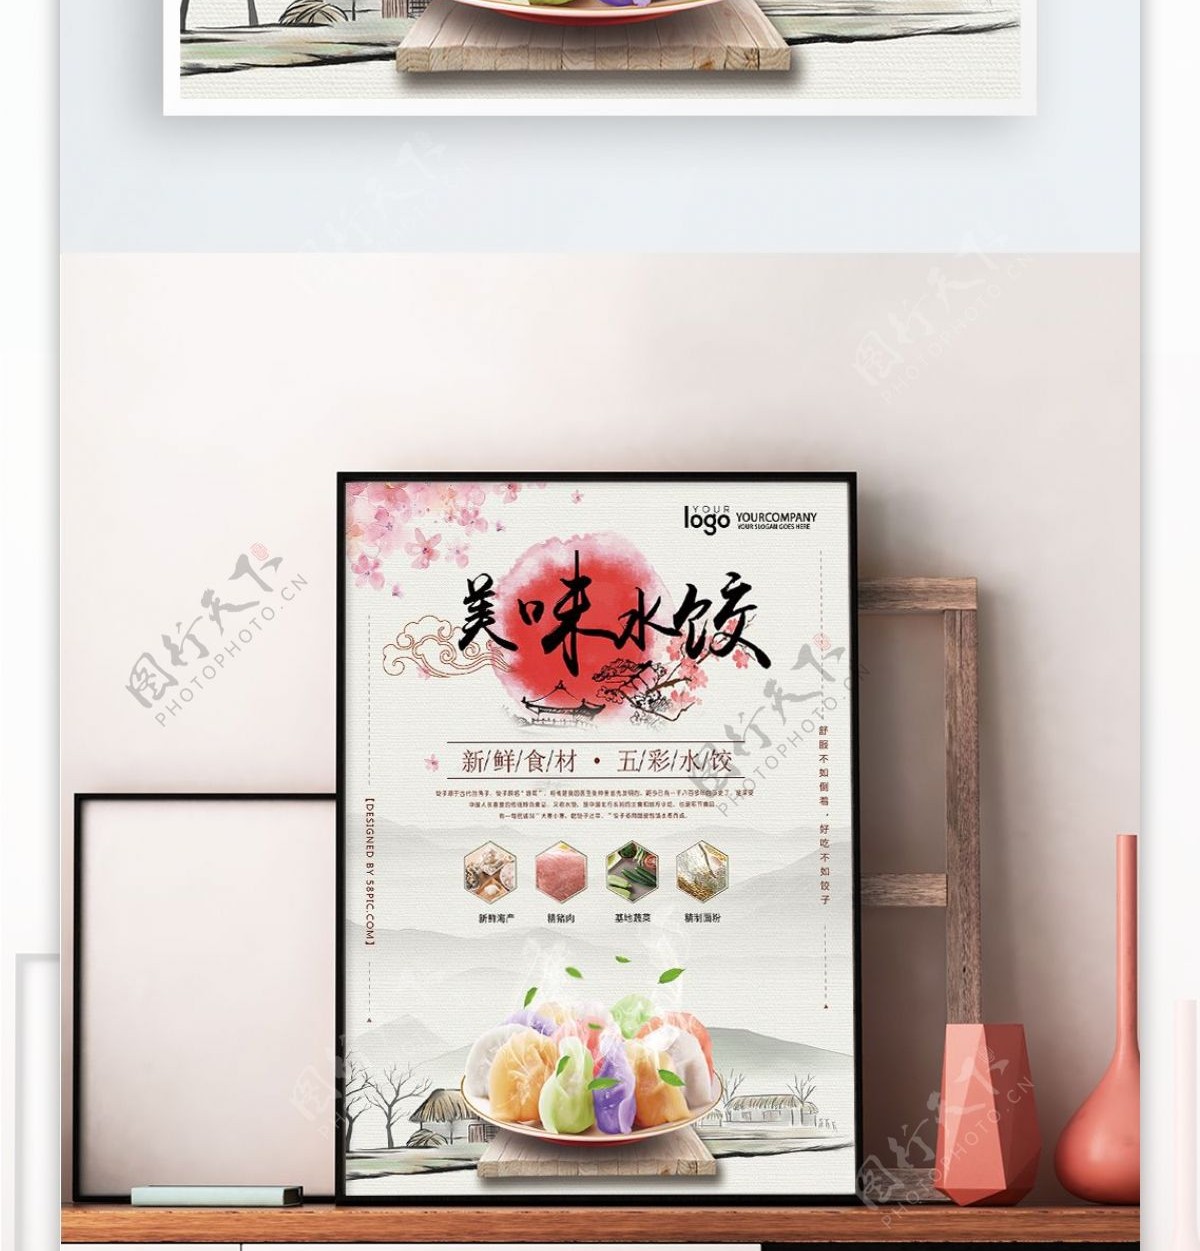 日系风格饺子美食宣传海报